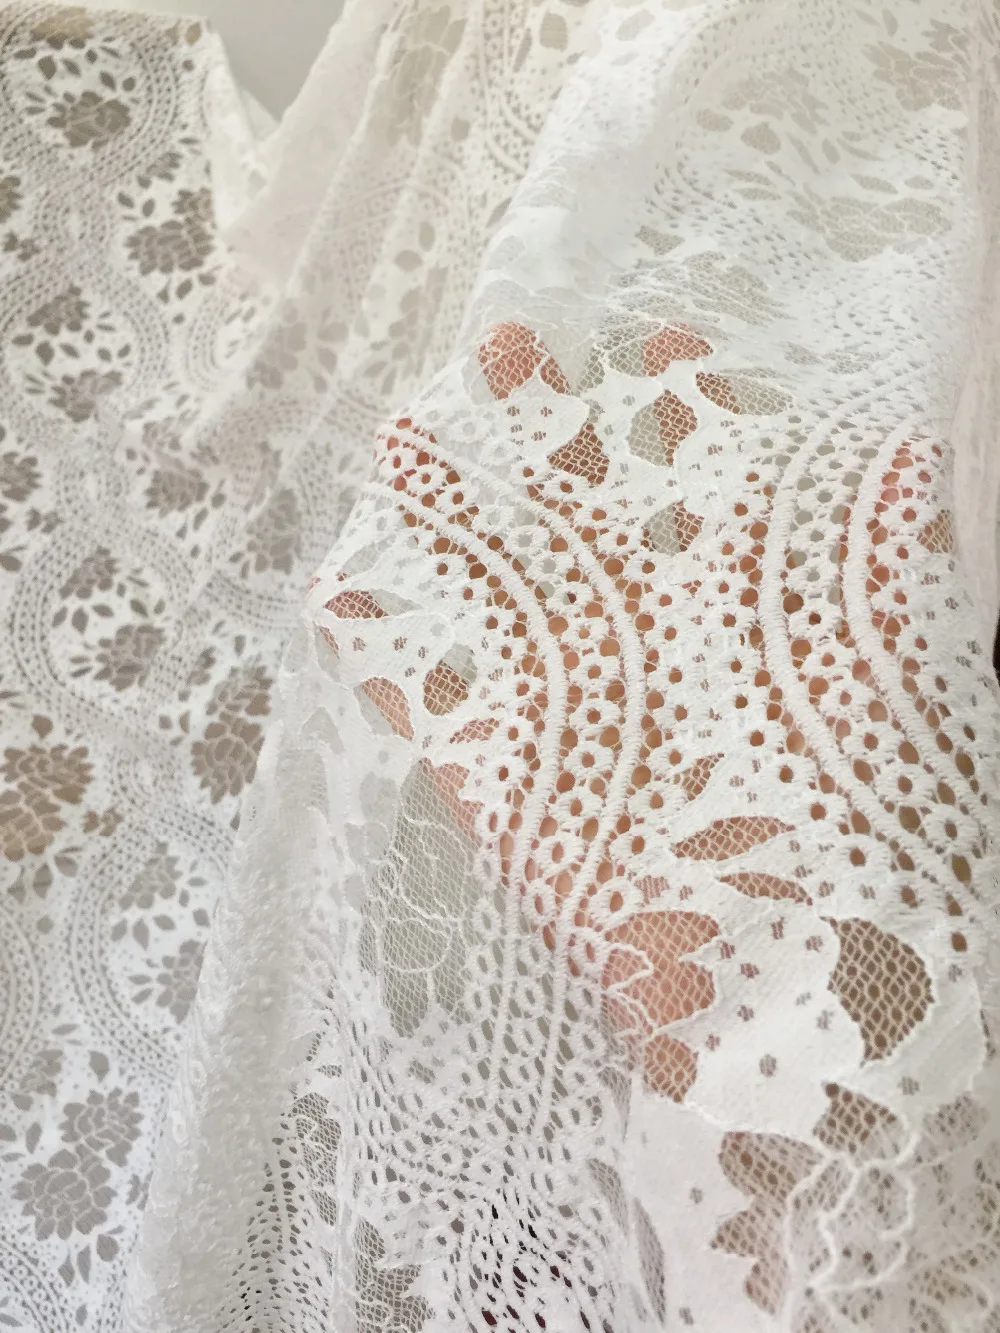 3 ярдов/лот Высокое качество шантильское кружево с ресничками ткань в белый, ретро цветочное вышитое изделие для свадебного платья платье кружевная ткань